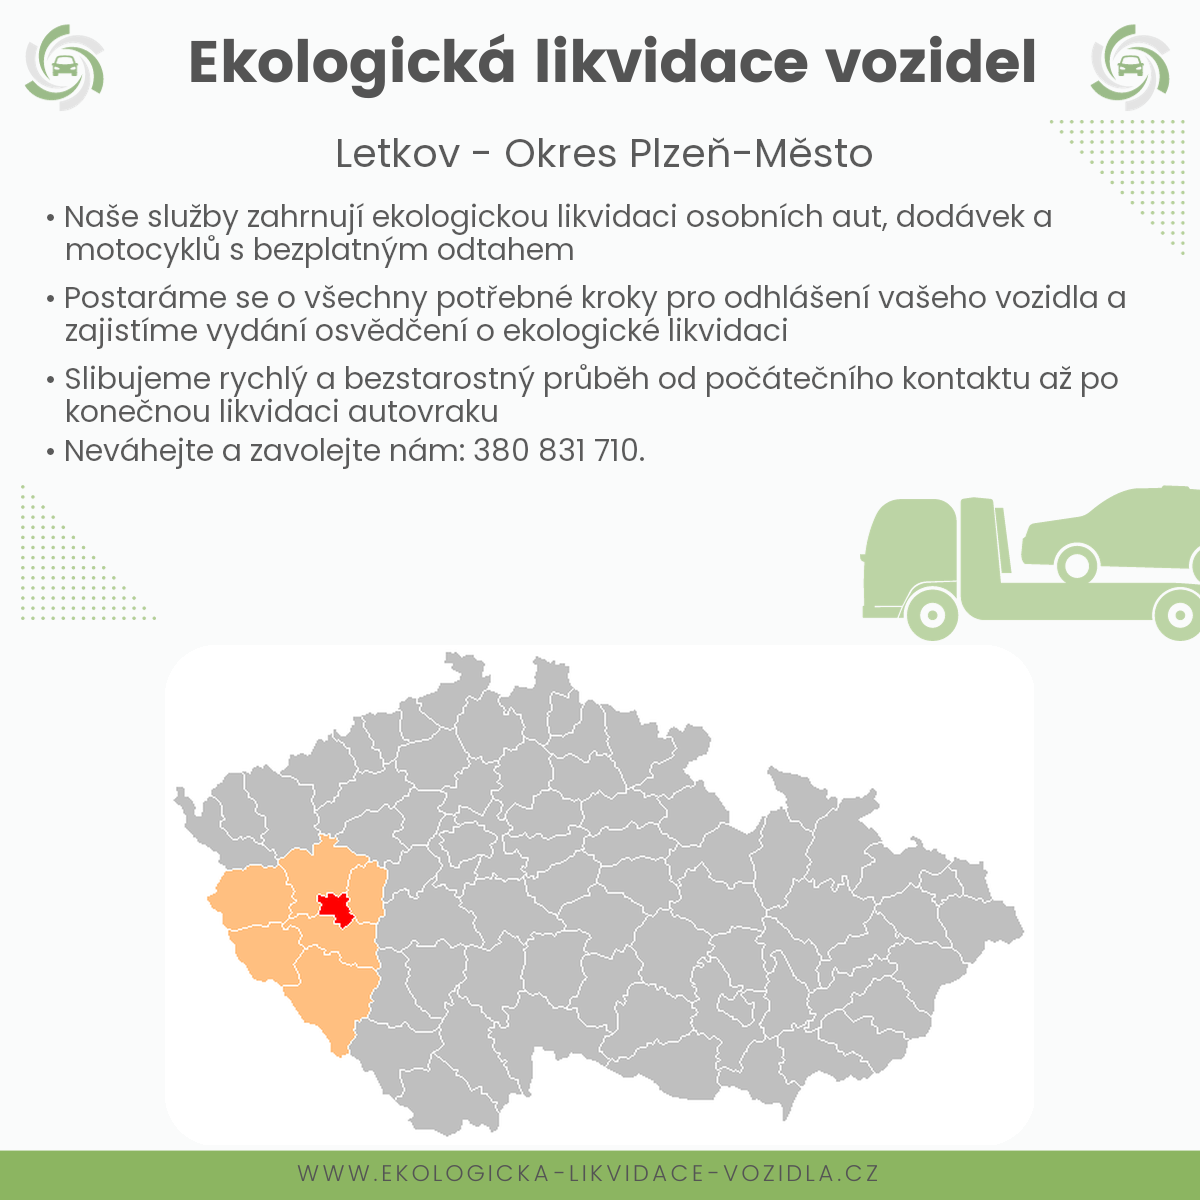 likvidace vozidel - Letkov